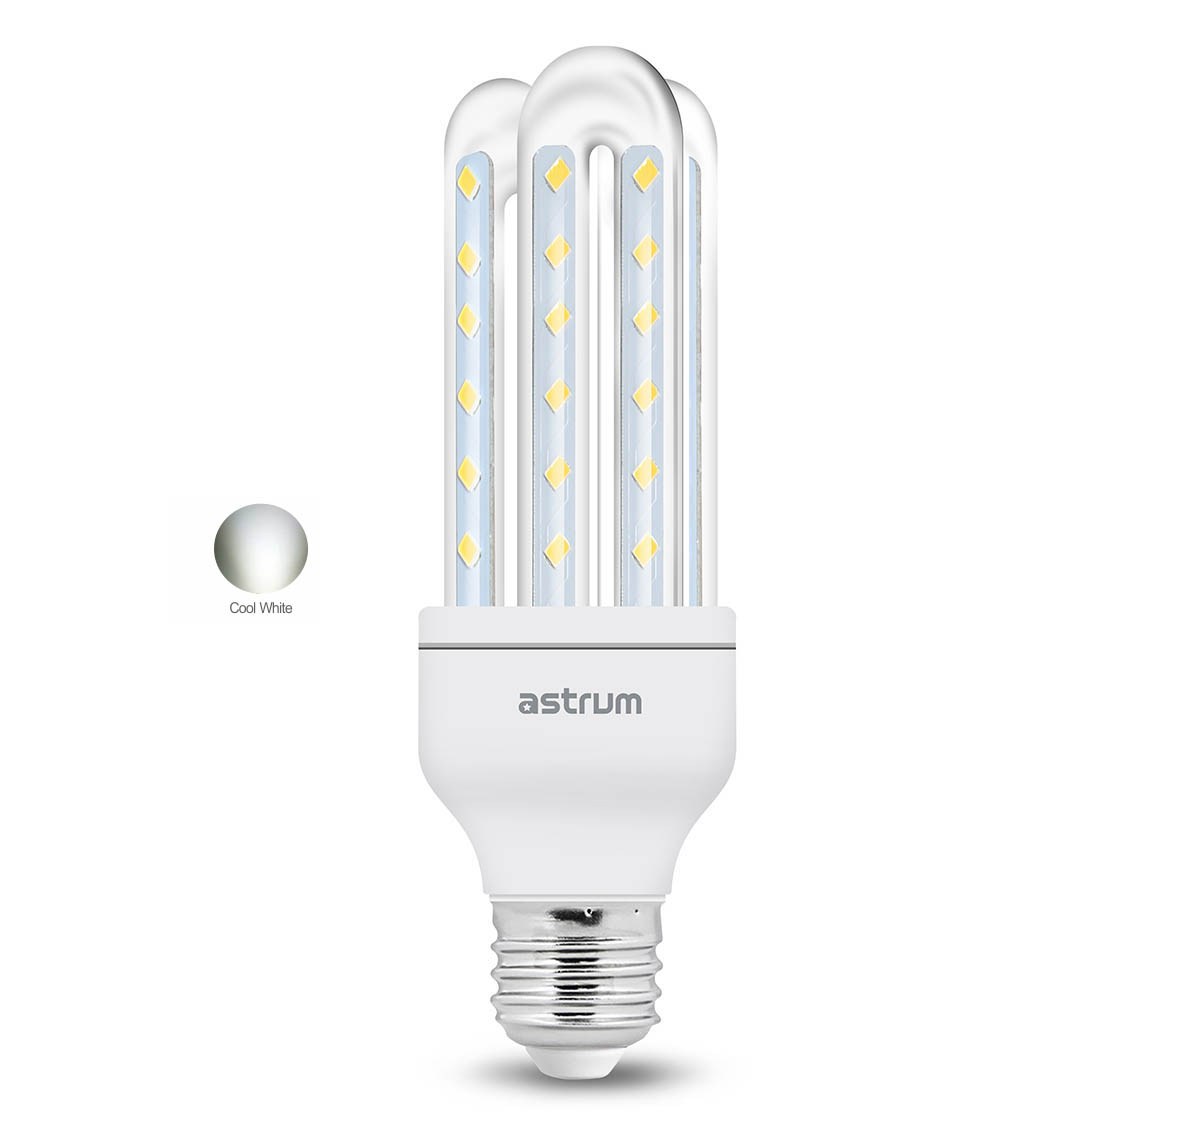 Astrum E27 K070 LED Corn Light (7W) - Cool White